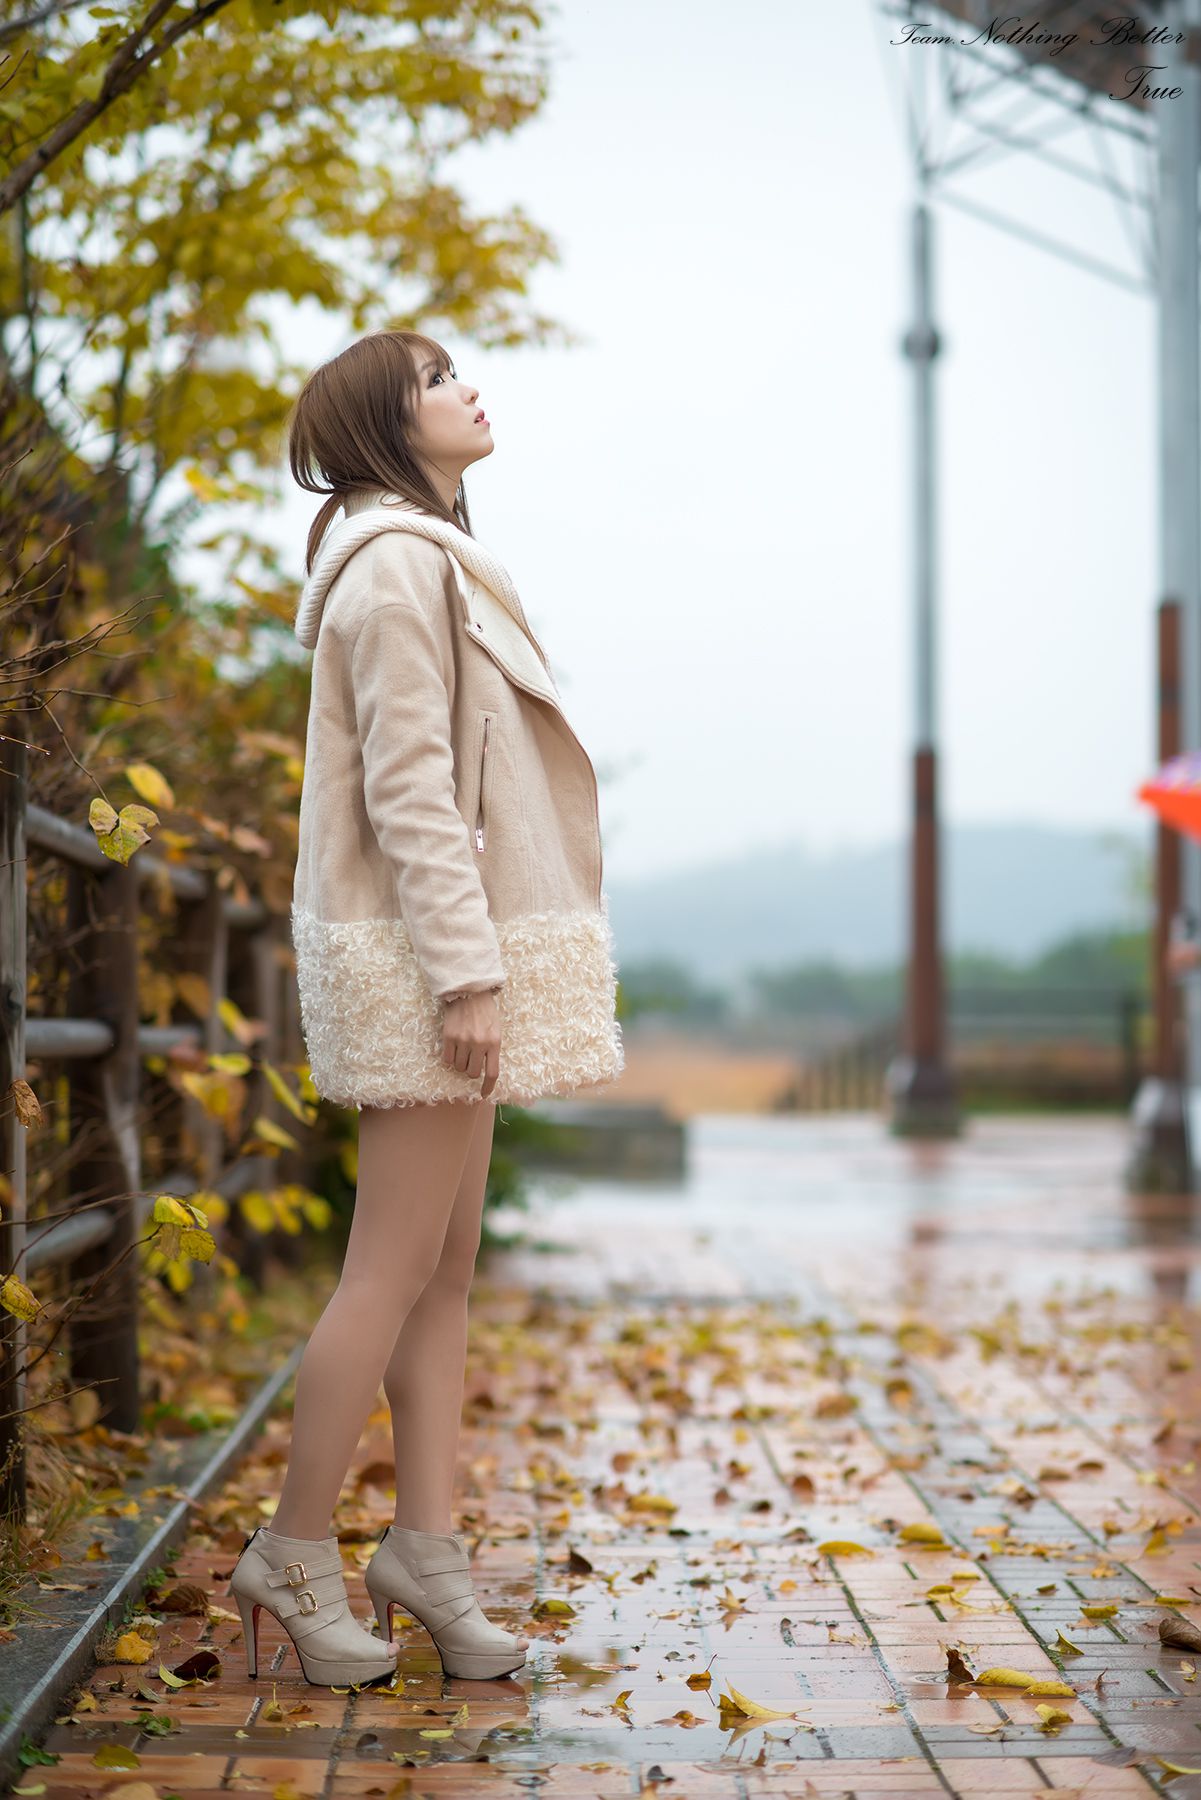 极品韩国美女李恩慧《下雨天街拍》 